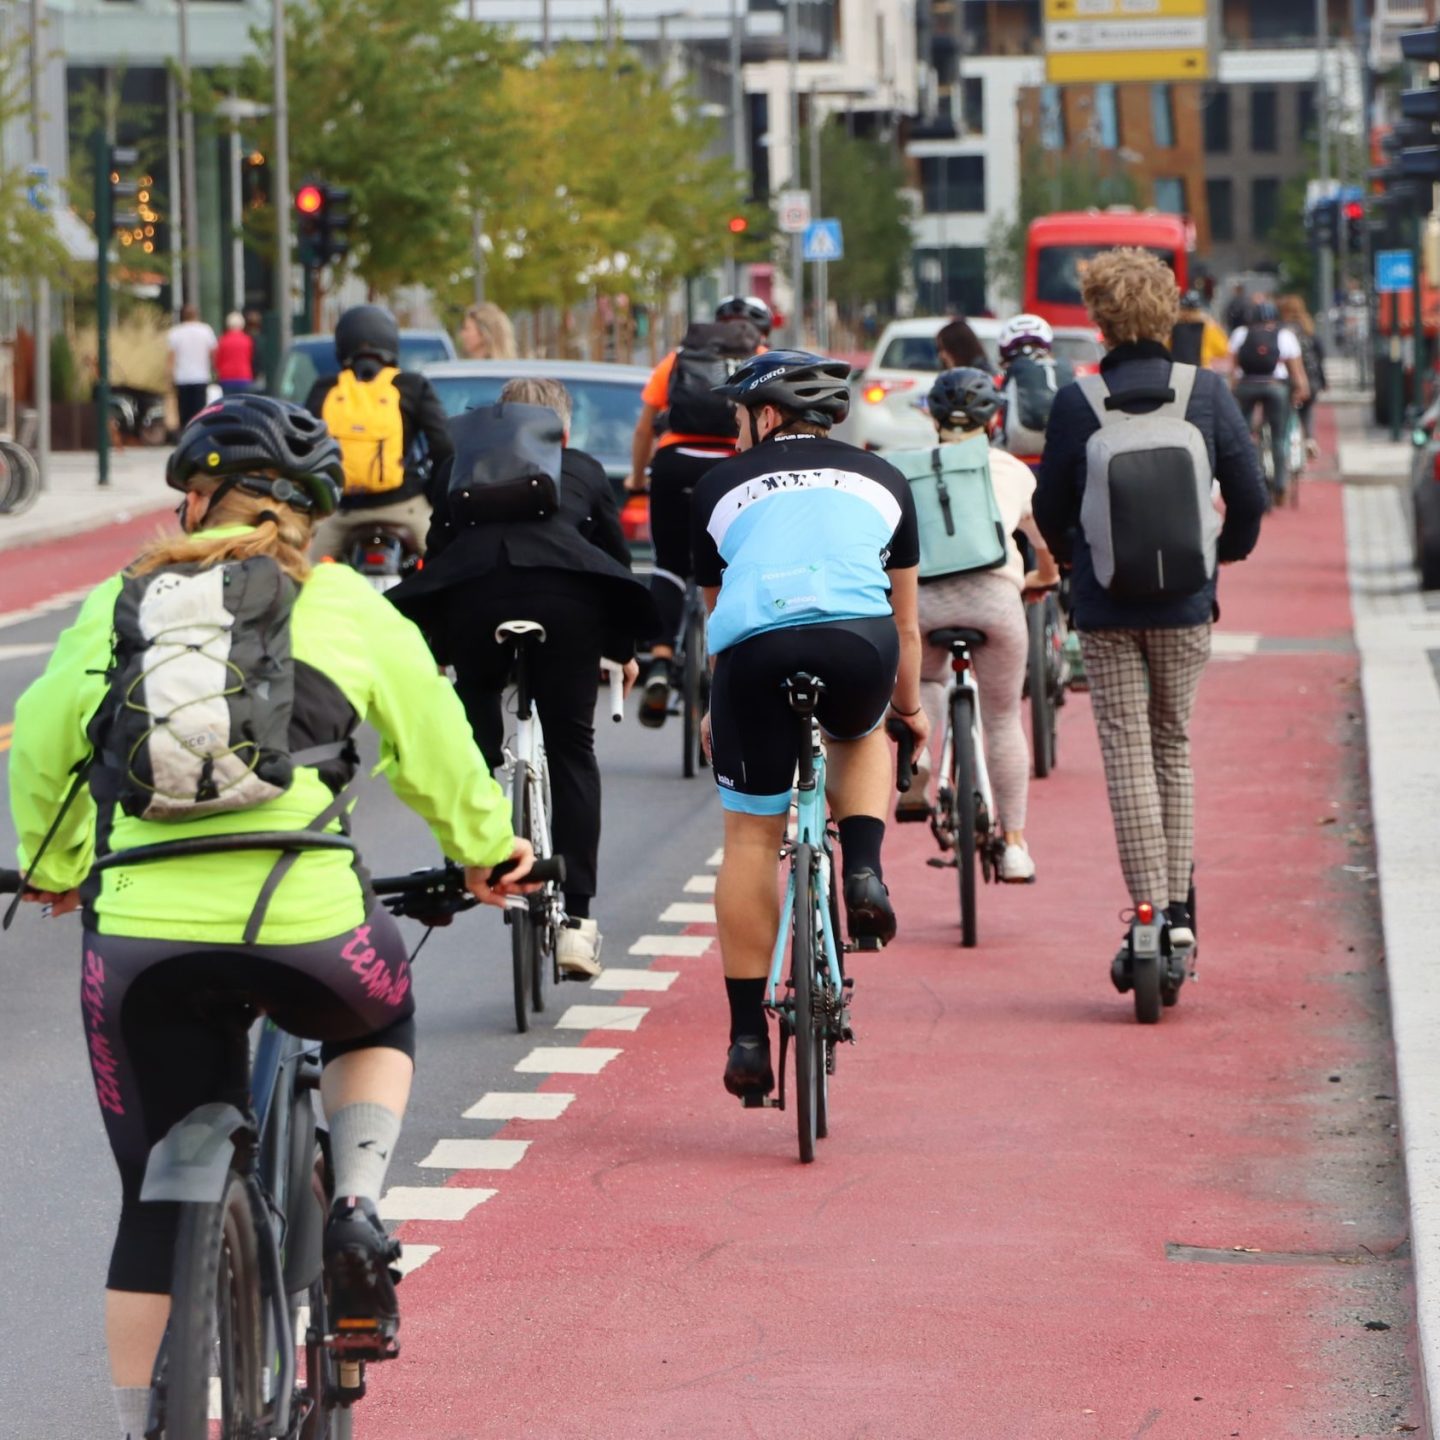 syklister som sykler på oppmerket sykkelvei ved siden av bilvei, Klimaundersøkelsen 2021